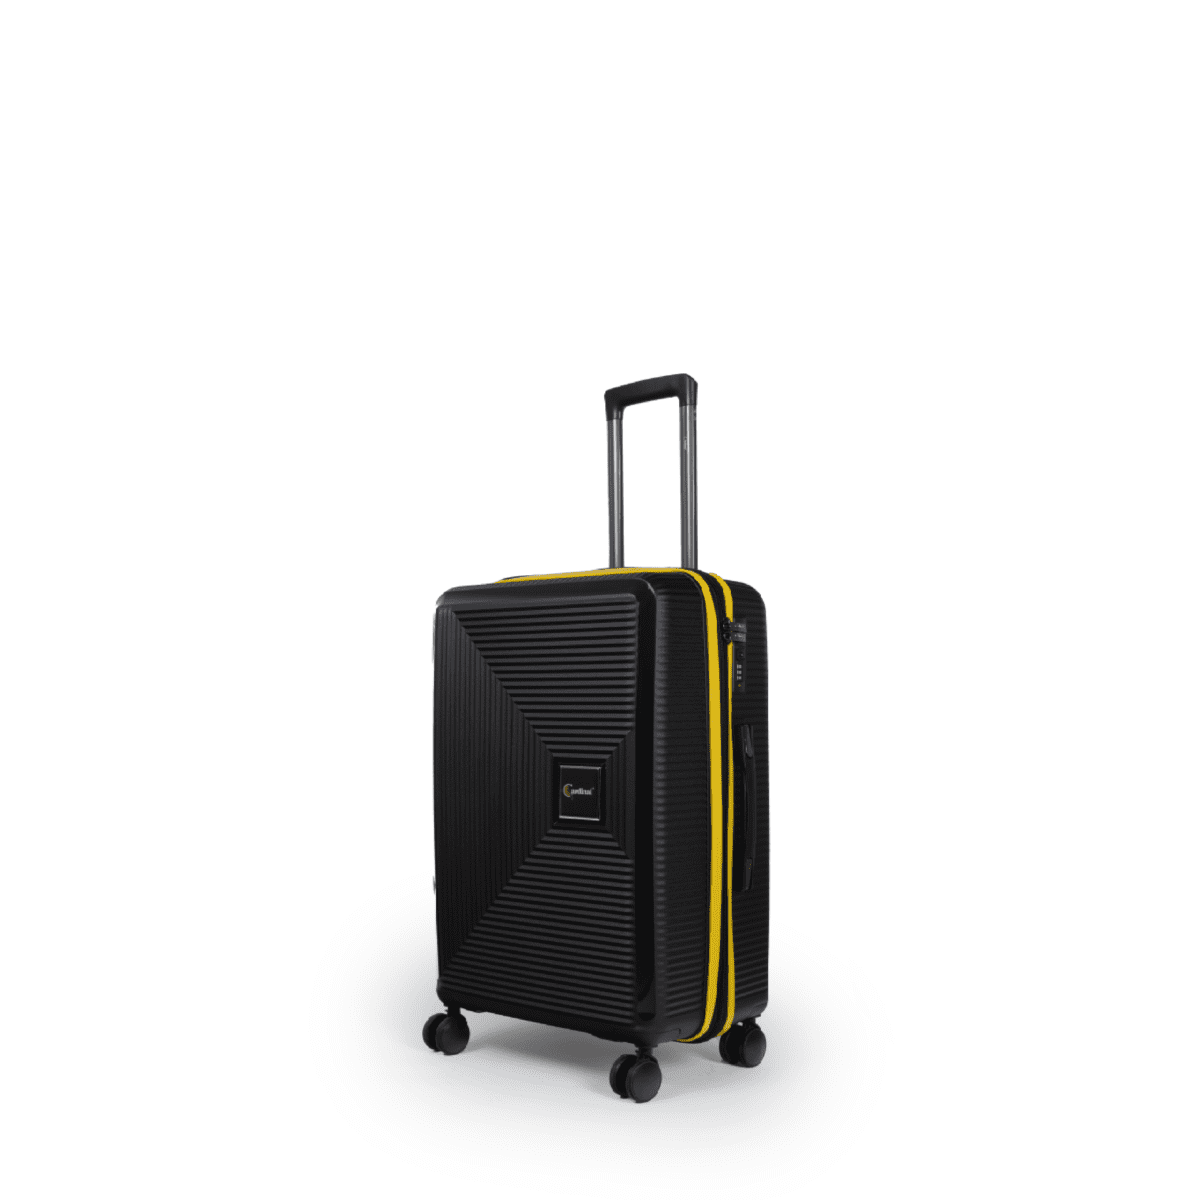 Βαλίτσα χειραποσκευή (καμπίνας) με tsa lock διπλά ροδάκια από πολυπροπυλένιο άθραυστο υλικό σε μαύρο χρώμα με κίτρινες λωρίδες .